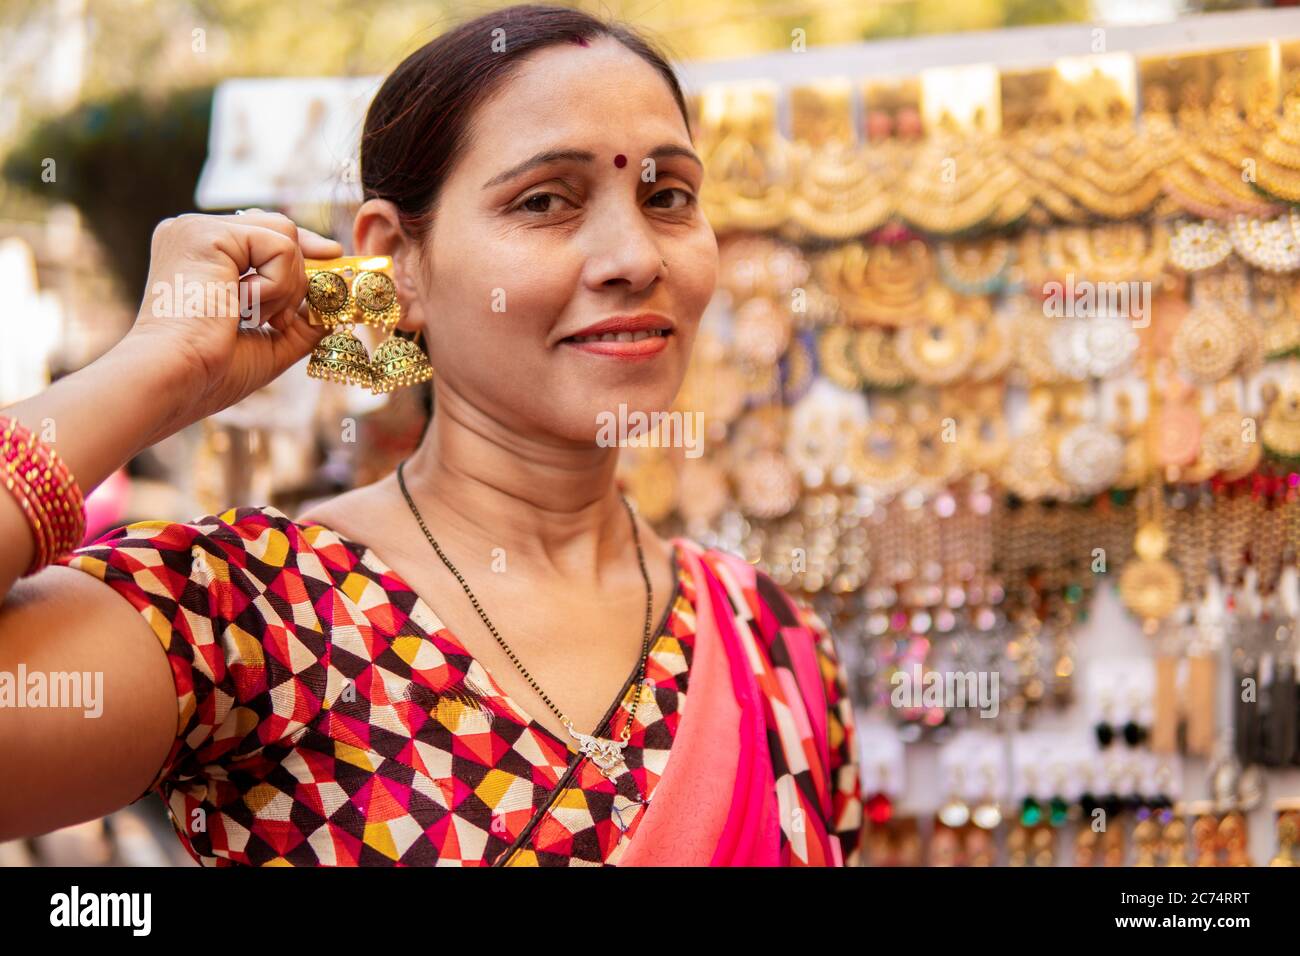 Indische reife Frau suchen und kaufen Ohrringe, Schmuck aus  Outdoor-Straßenmarkt von Delhi, Indien am Tag Zeit. Sie ist in ihrer  traditionellen indischen dres Stockfotografie - Alamy